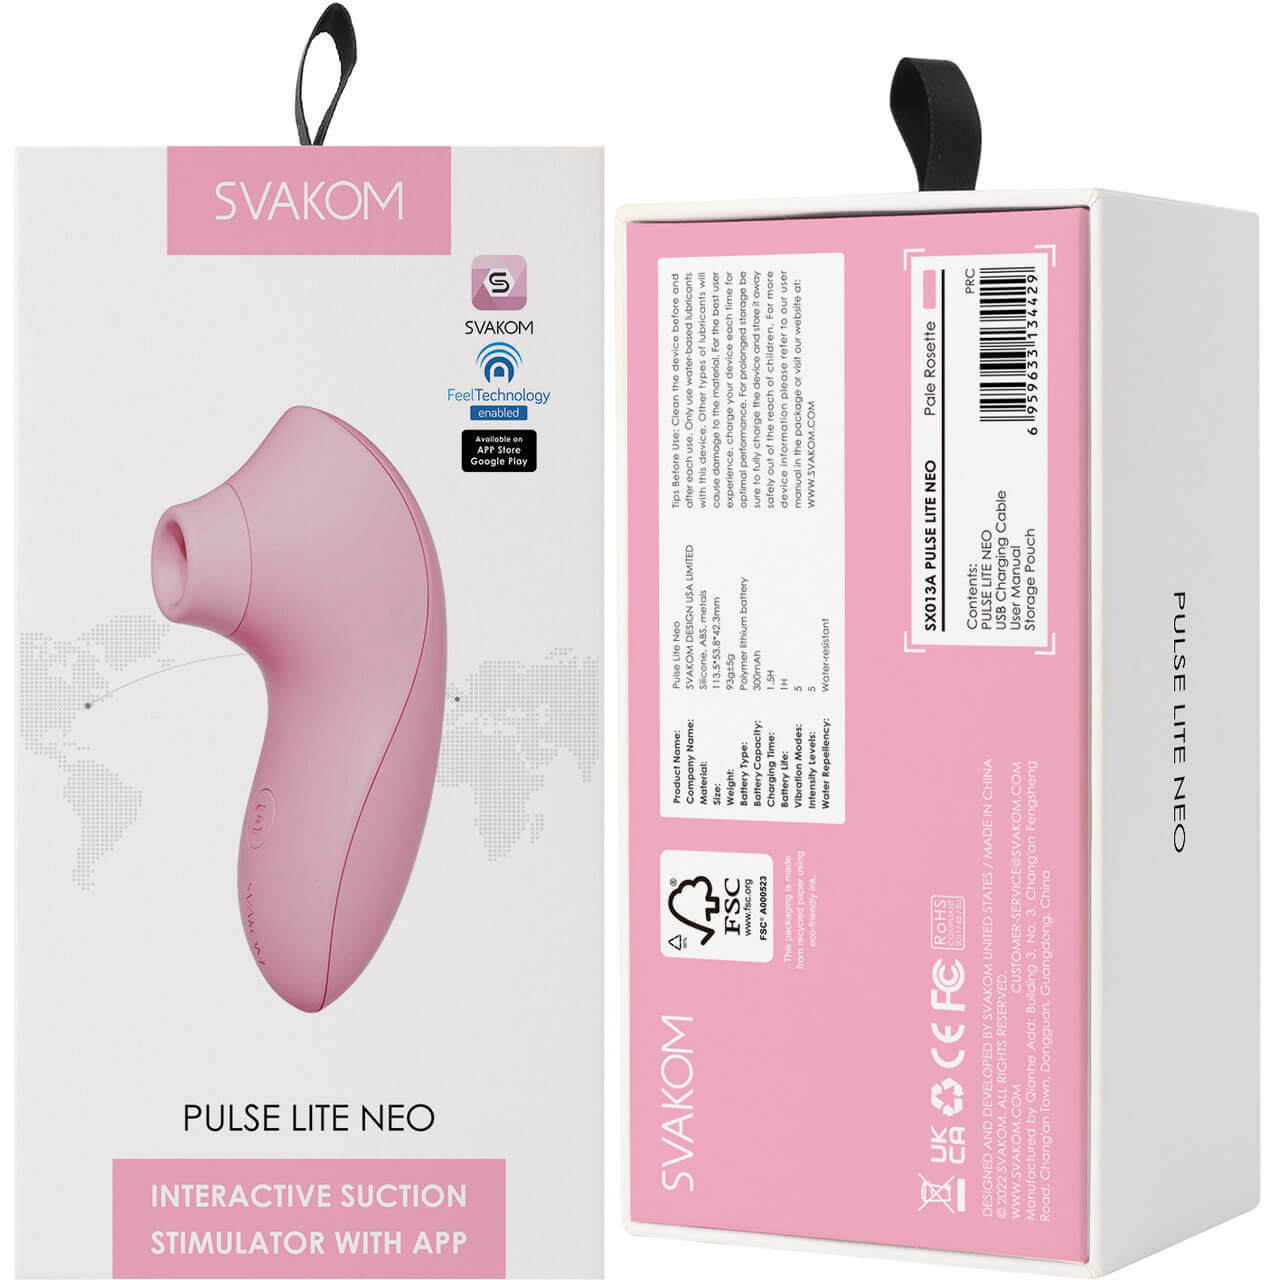 女士用品| 乳房陰蒂震動器|Svakom|PULSE LITE NEO|6959633134429;